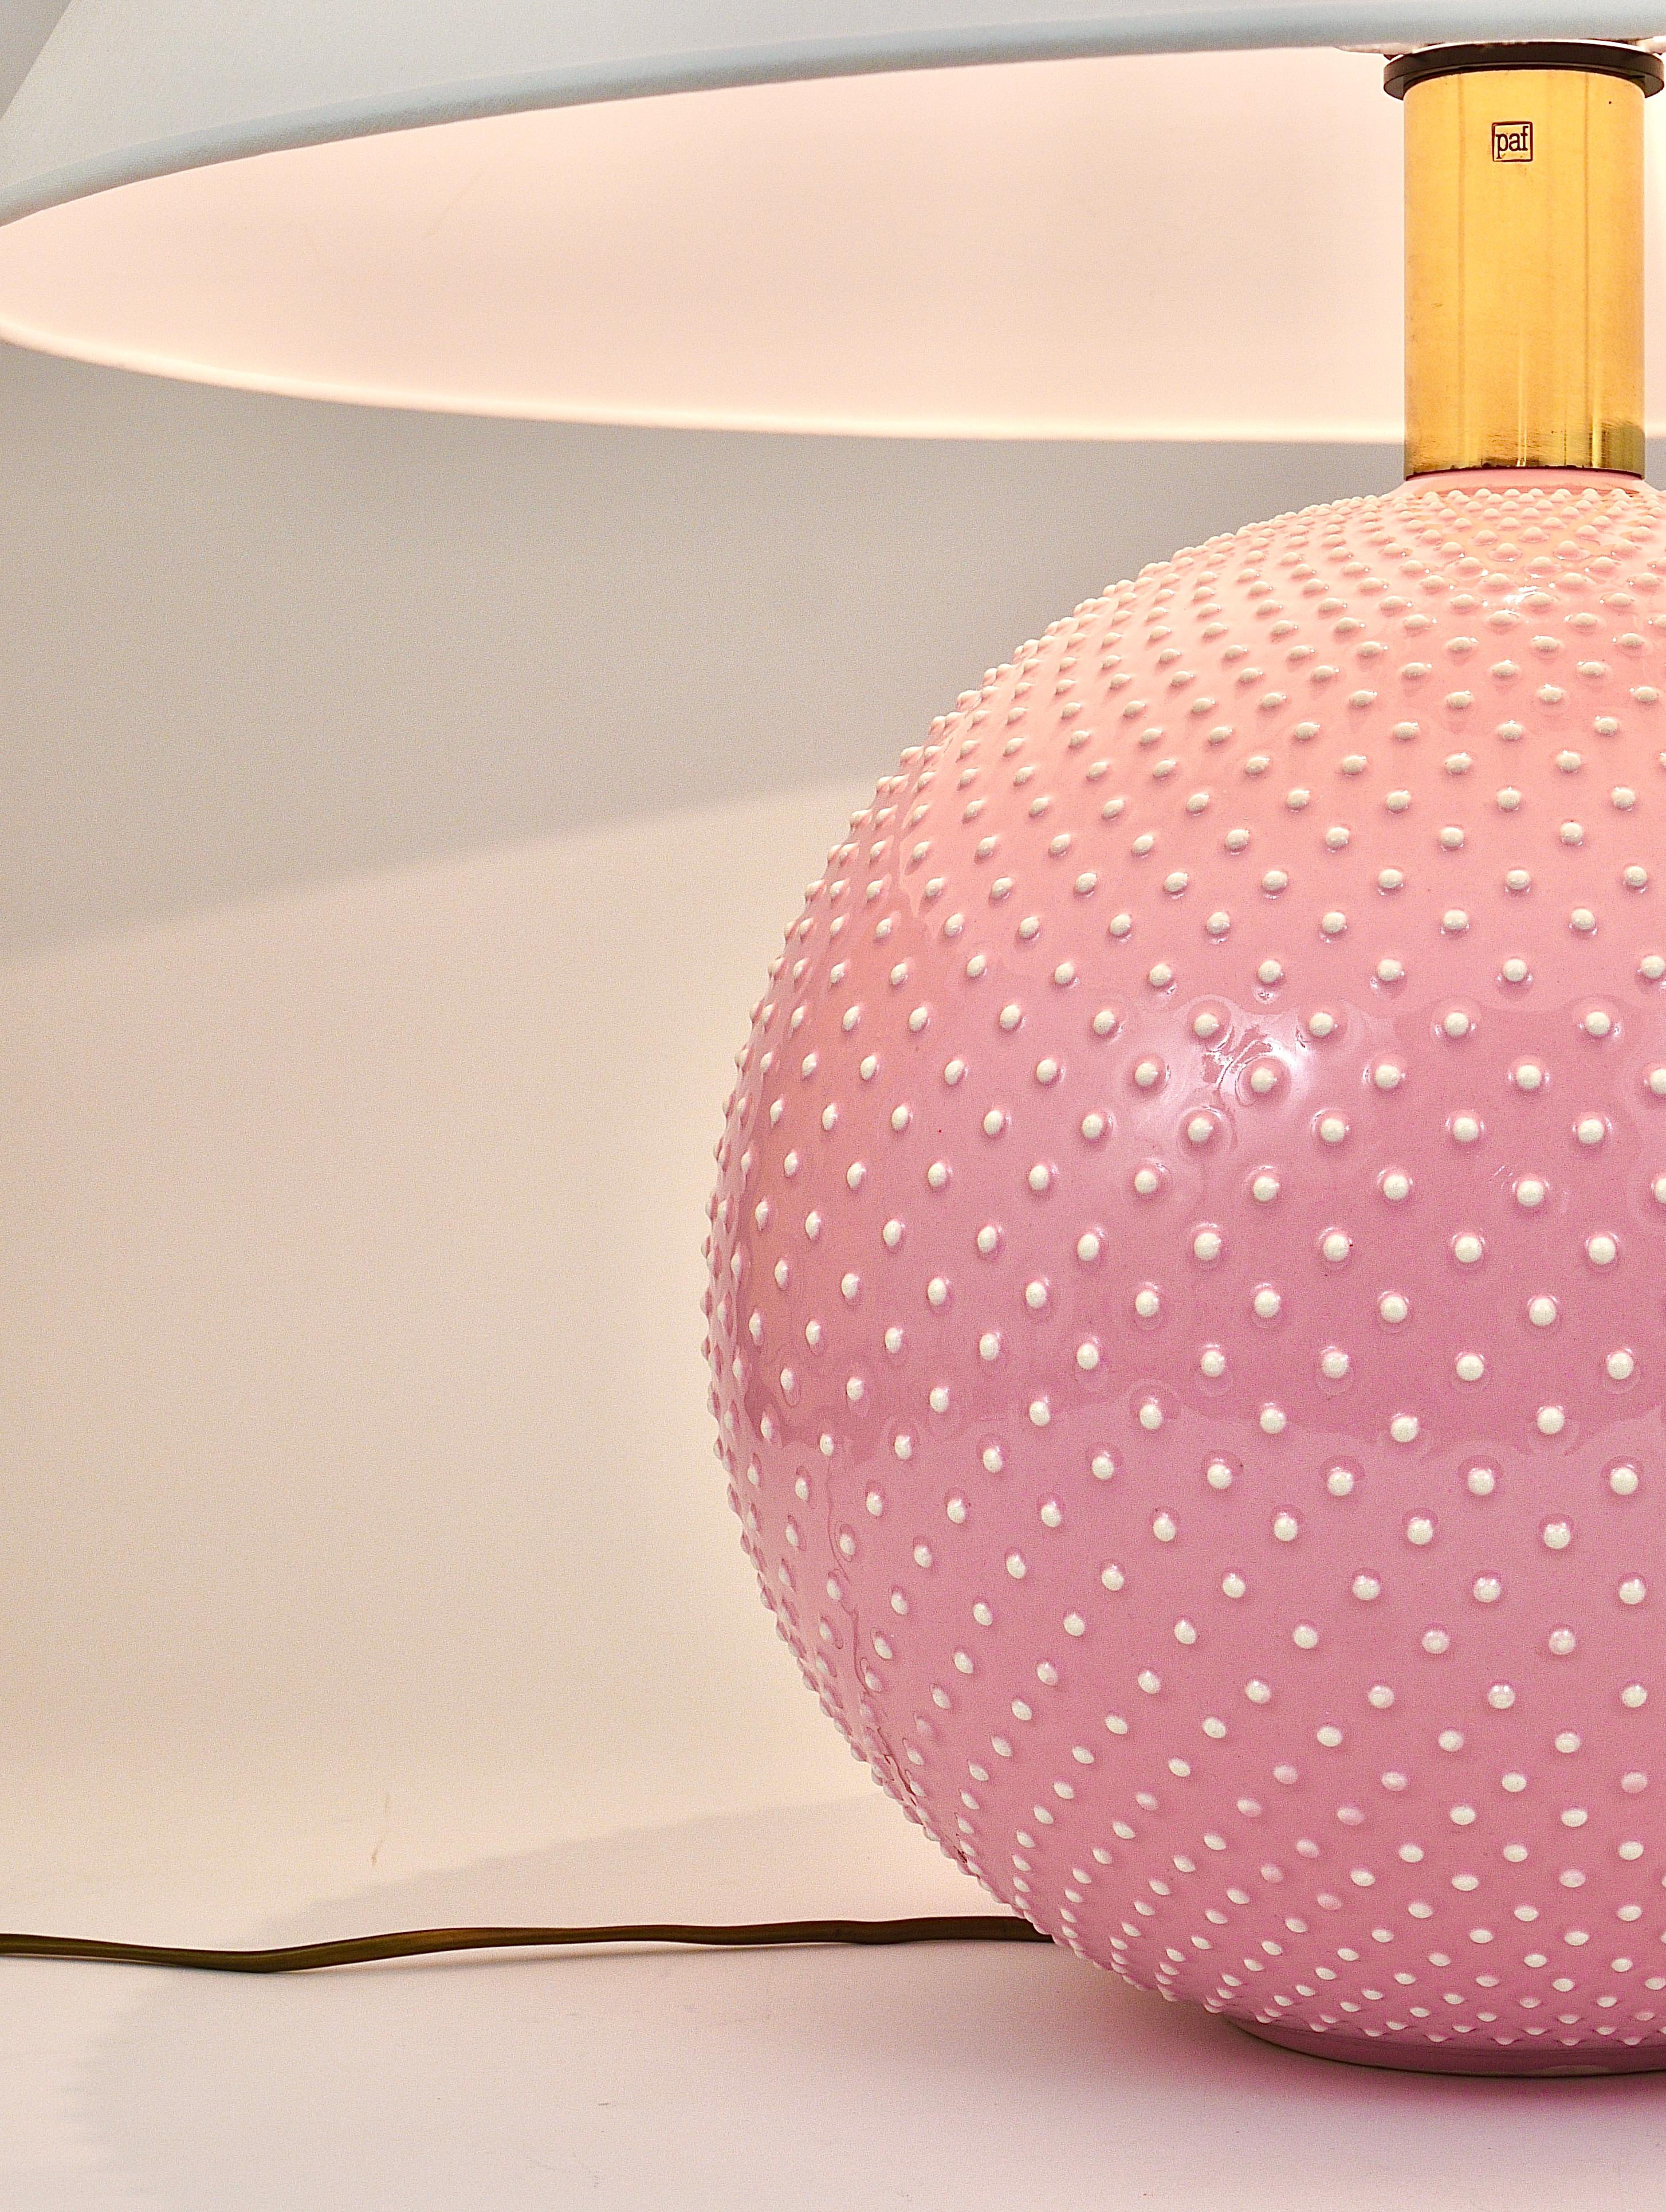 Rosé Pastel Polka Dot Sphere Table Lamp, Ceramic, Brass, Studio Paf Milano, 1970 For Sale 7